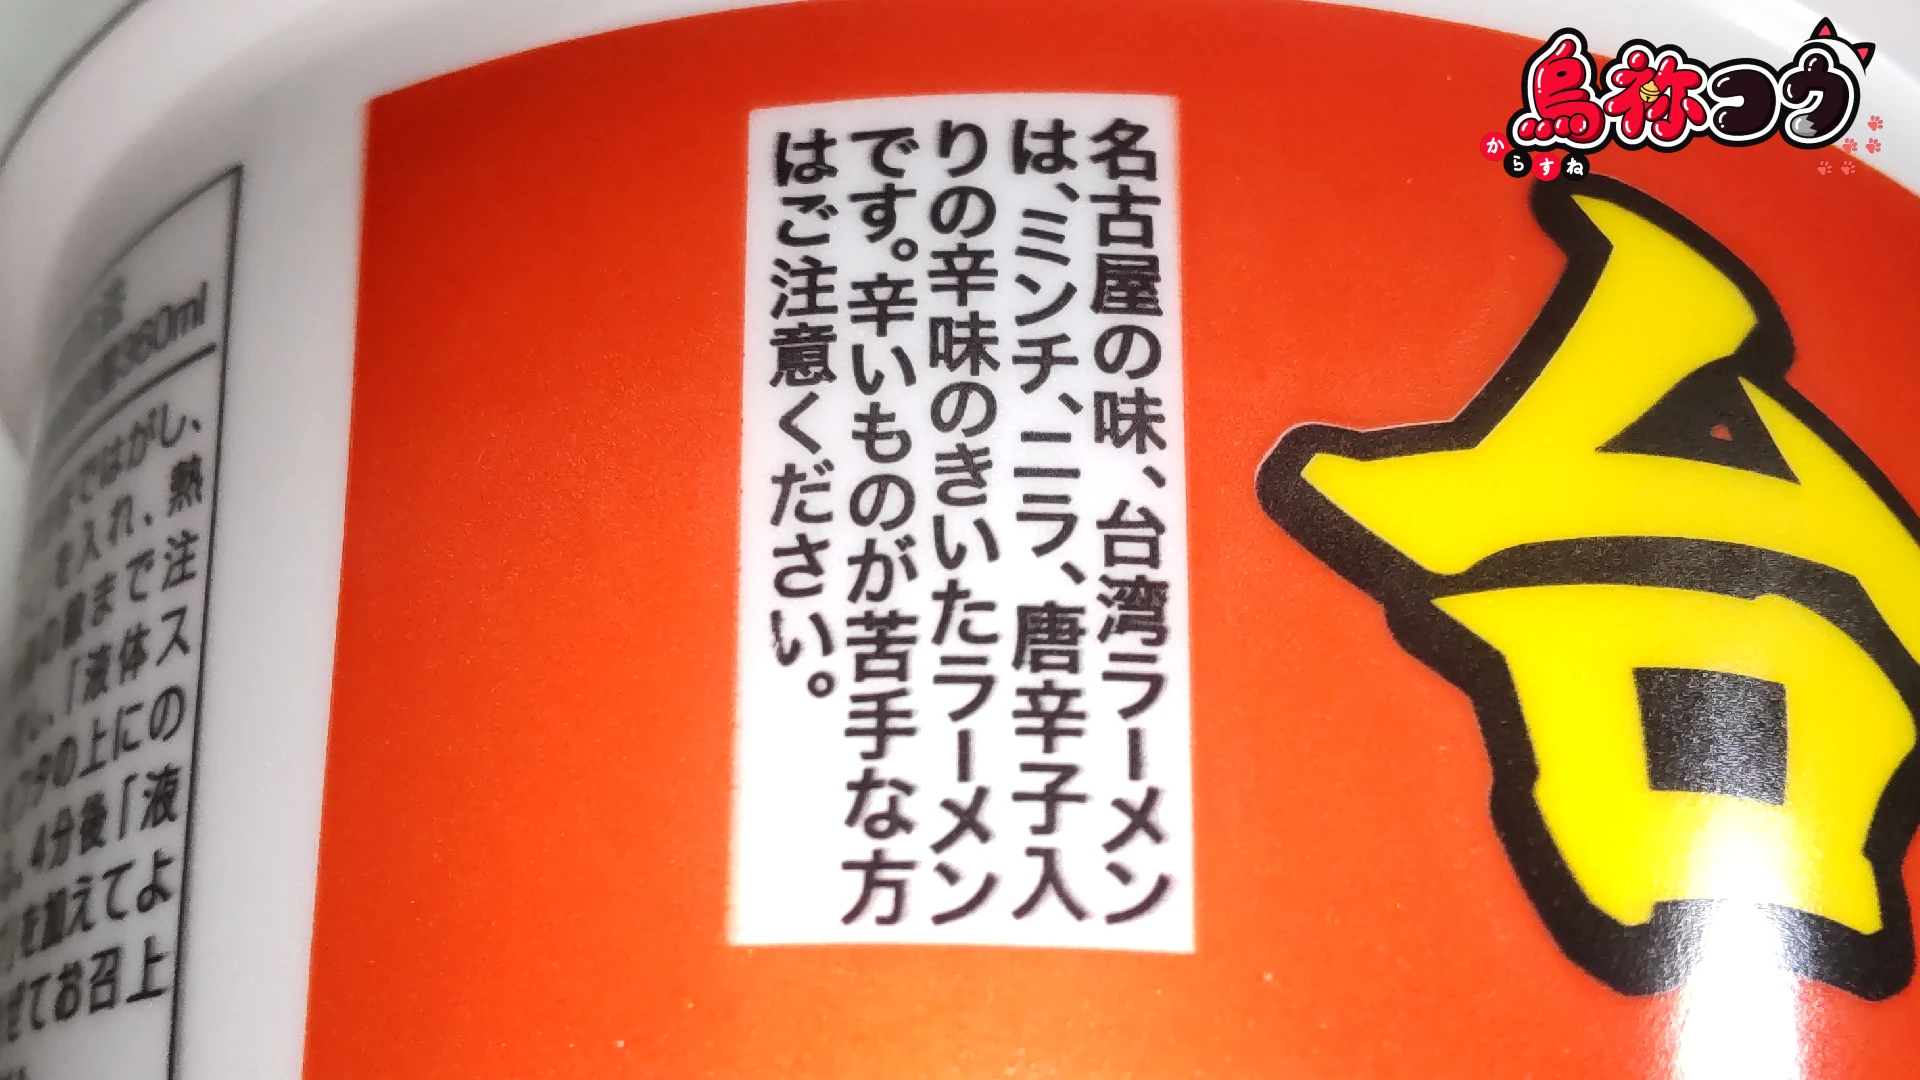 寿がきやのカップ台湾ラーメンのカップに書かれた「名古屋の味、台湾ラーメンは、ミンチ、ニラ、唐辛子入り辛味のきいたラーメンです。辛いものが苦手な方はご注意ください」の表記です